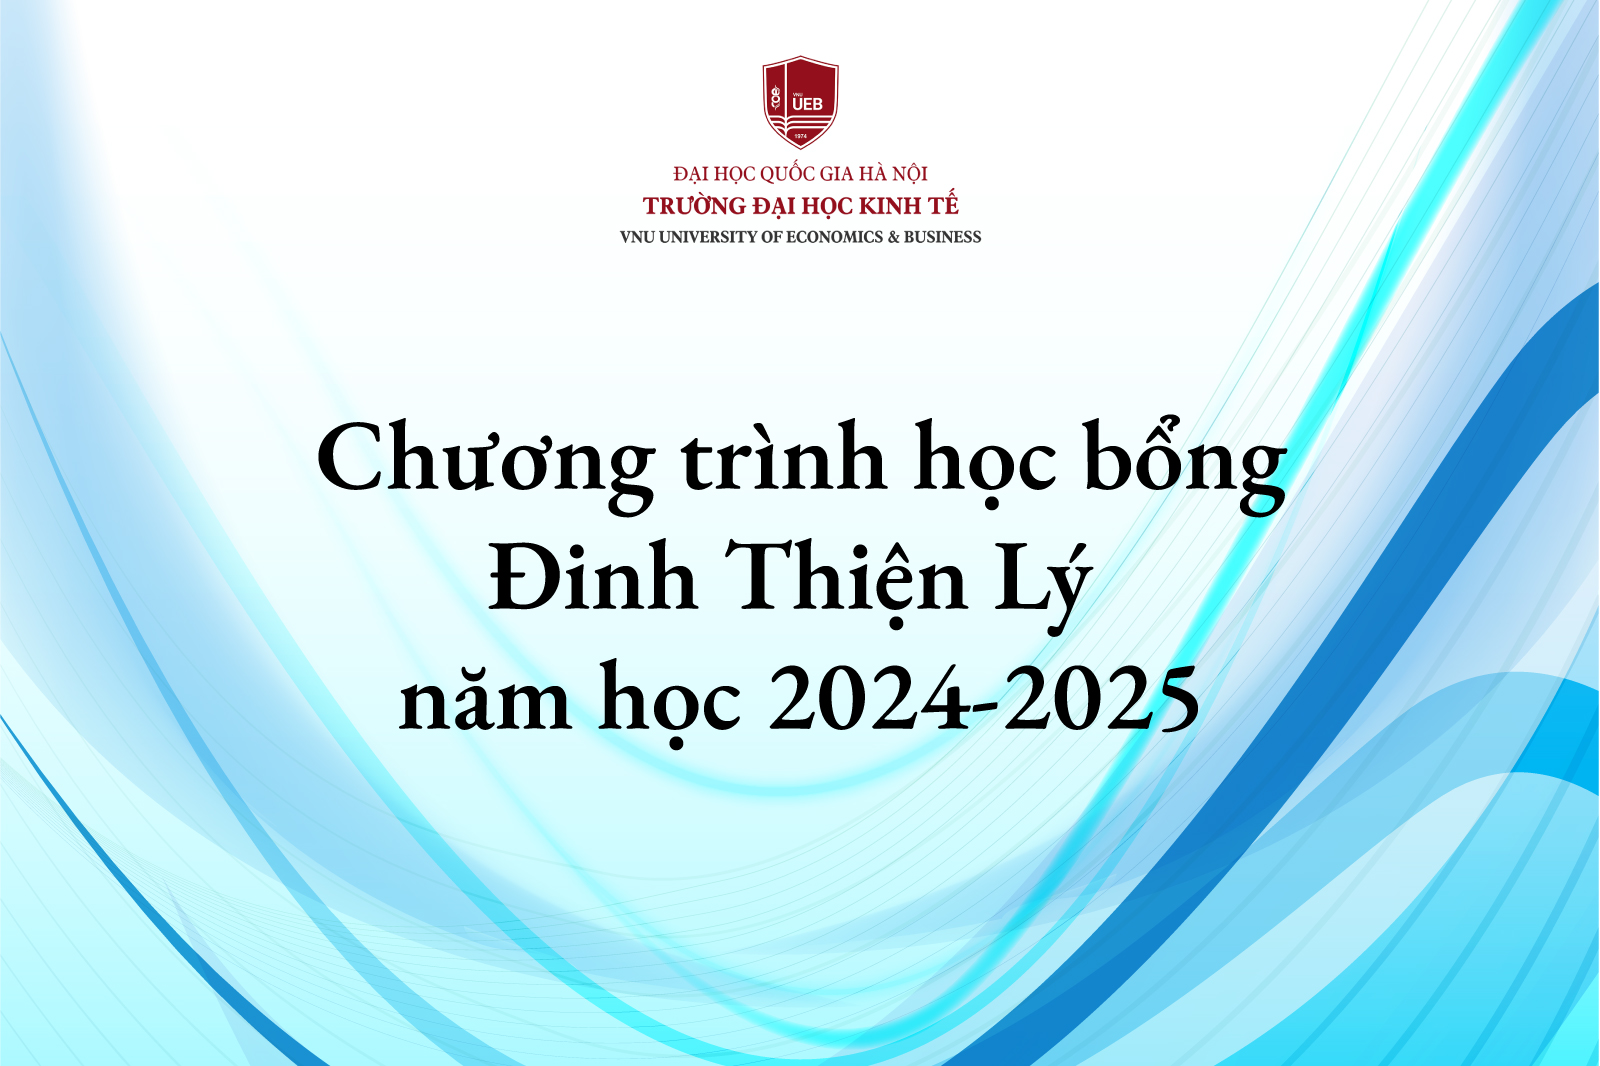 Chương trình học bổng Đinh Thiện Lý năm học 2024 - 2025